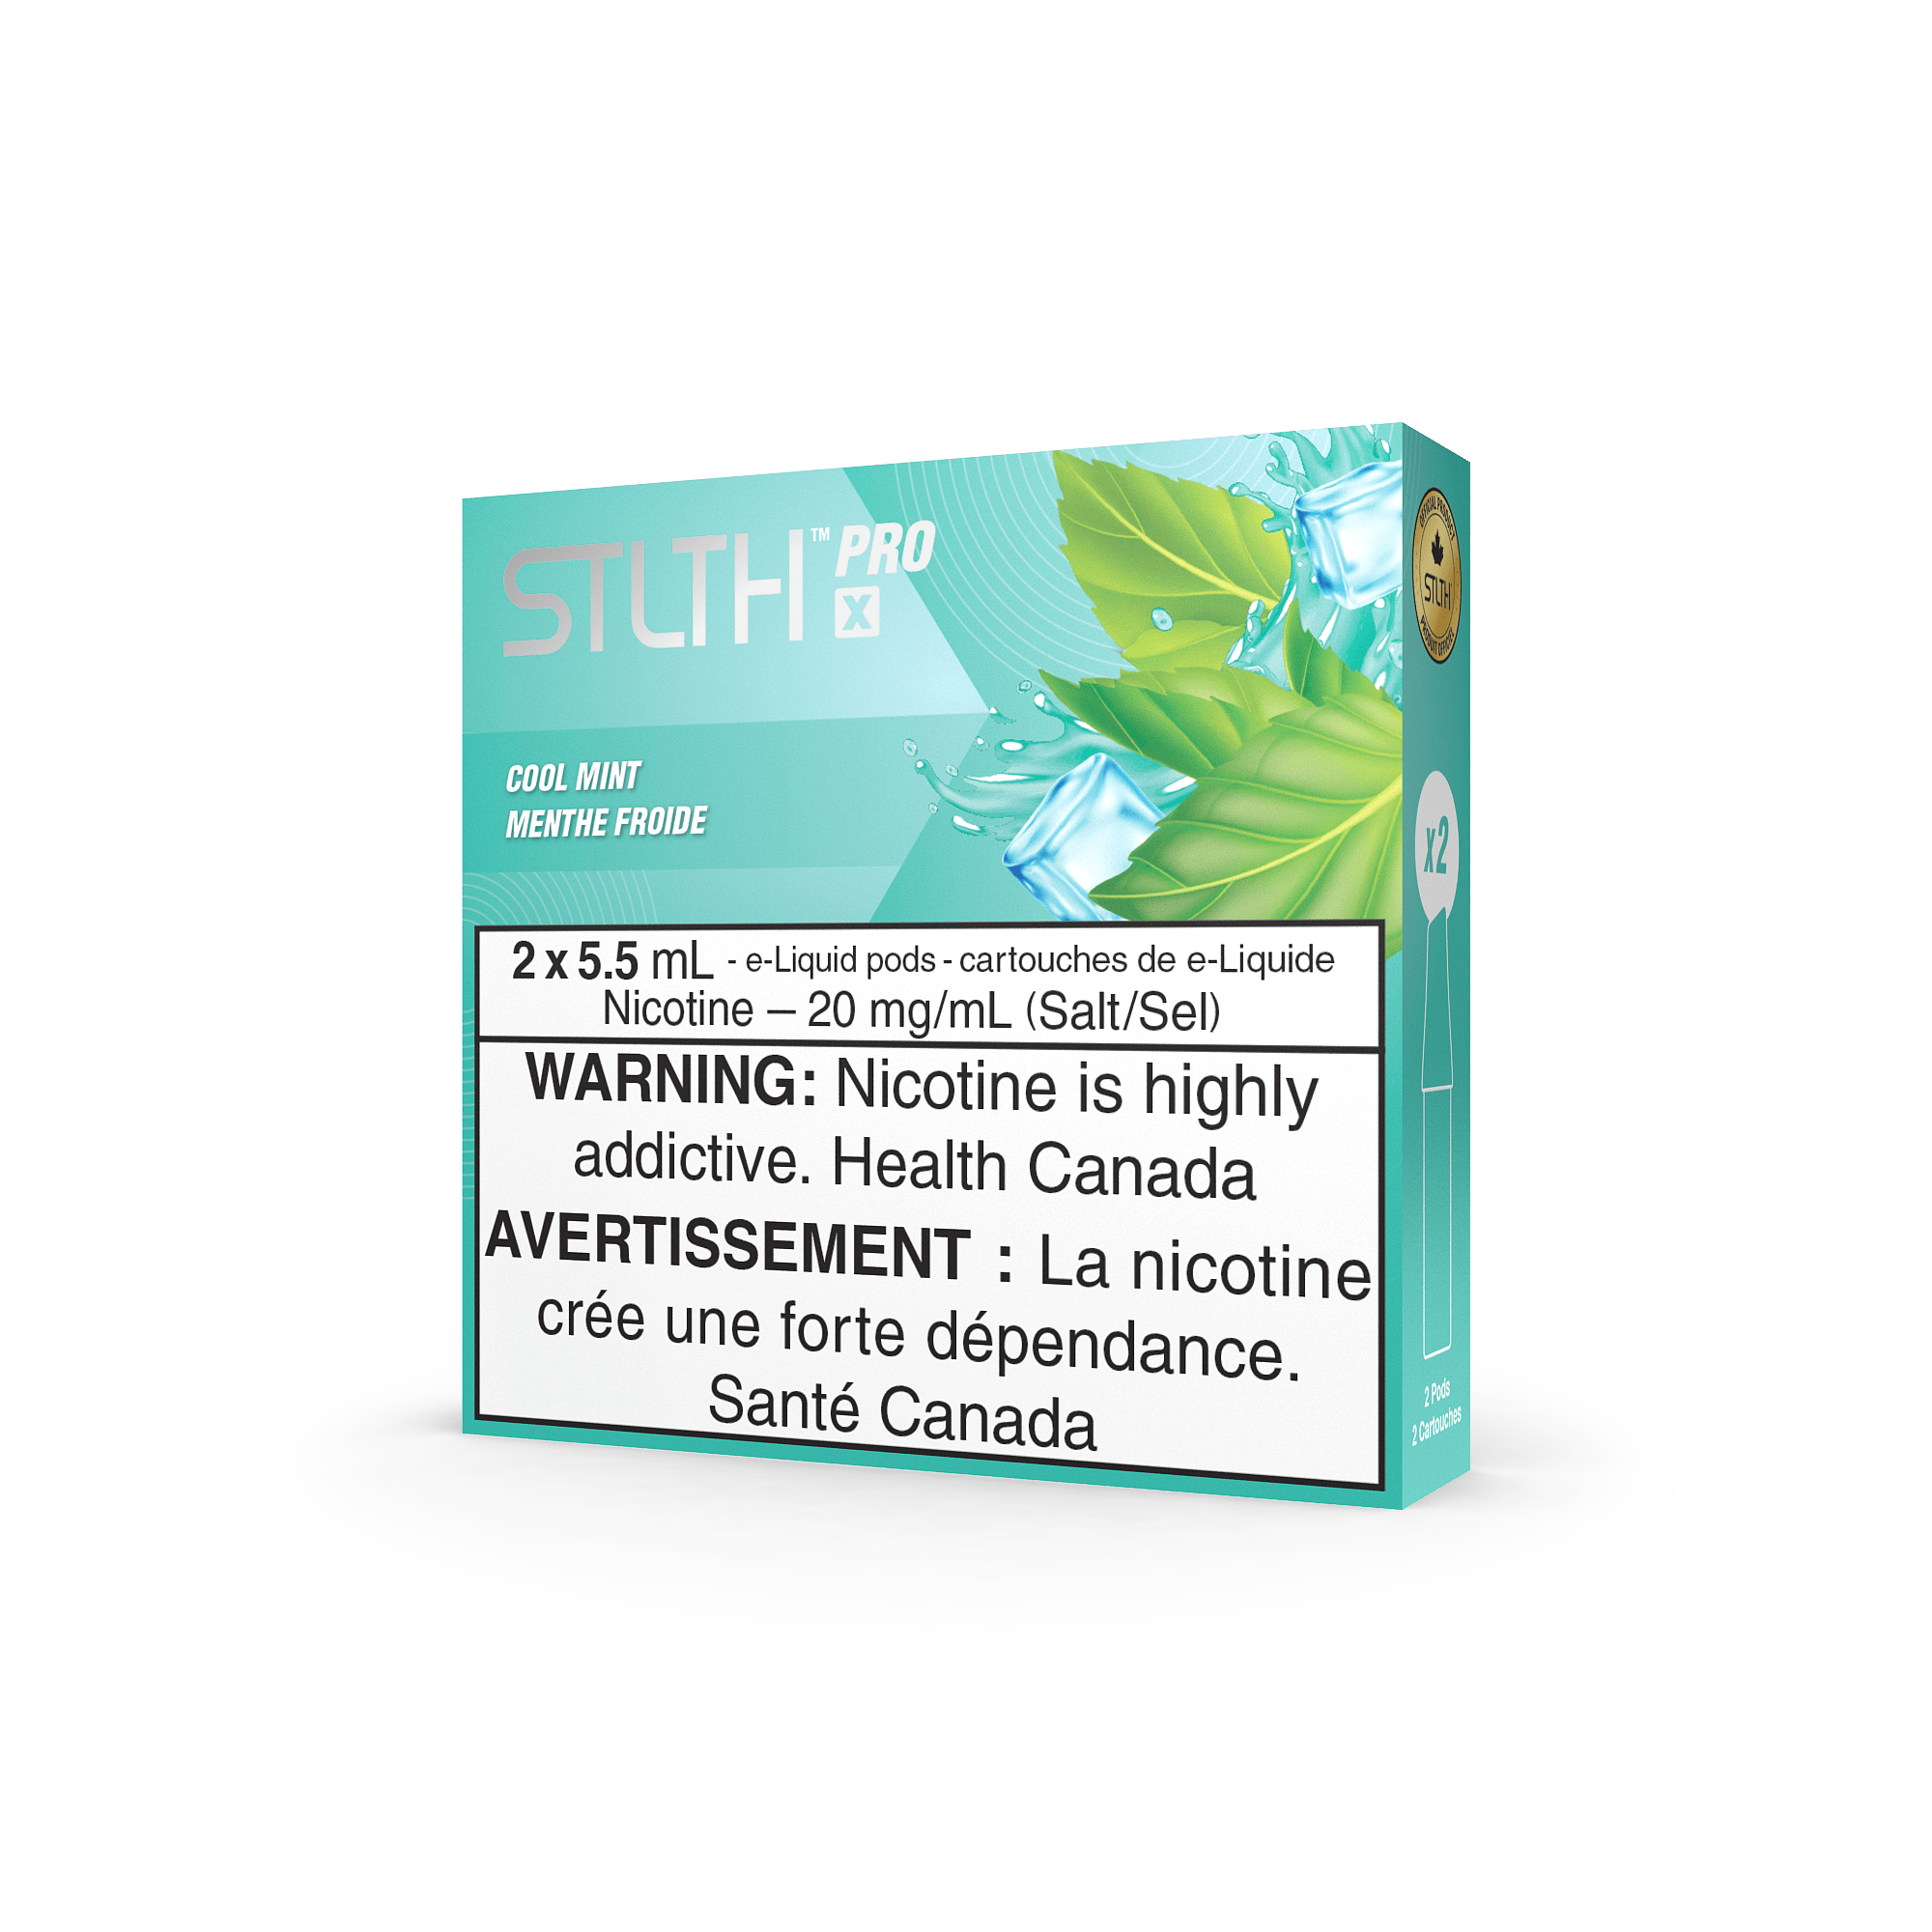 STLTH Pro X - Cool Mint Vape Pod available on Canada online vape shop